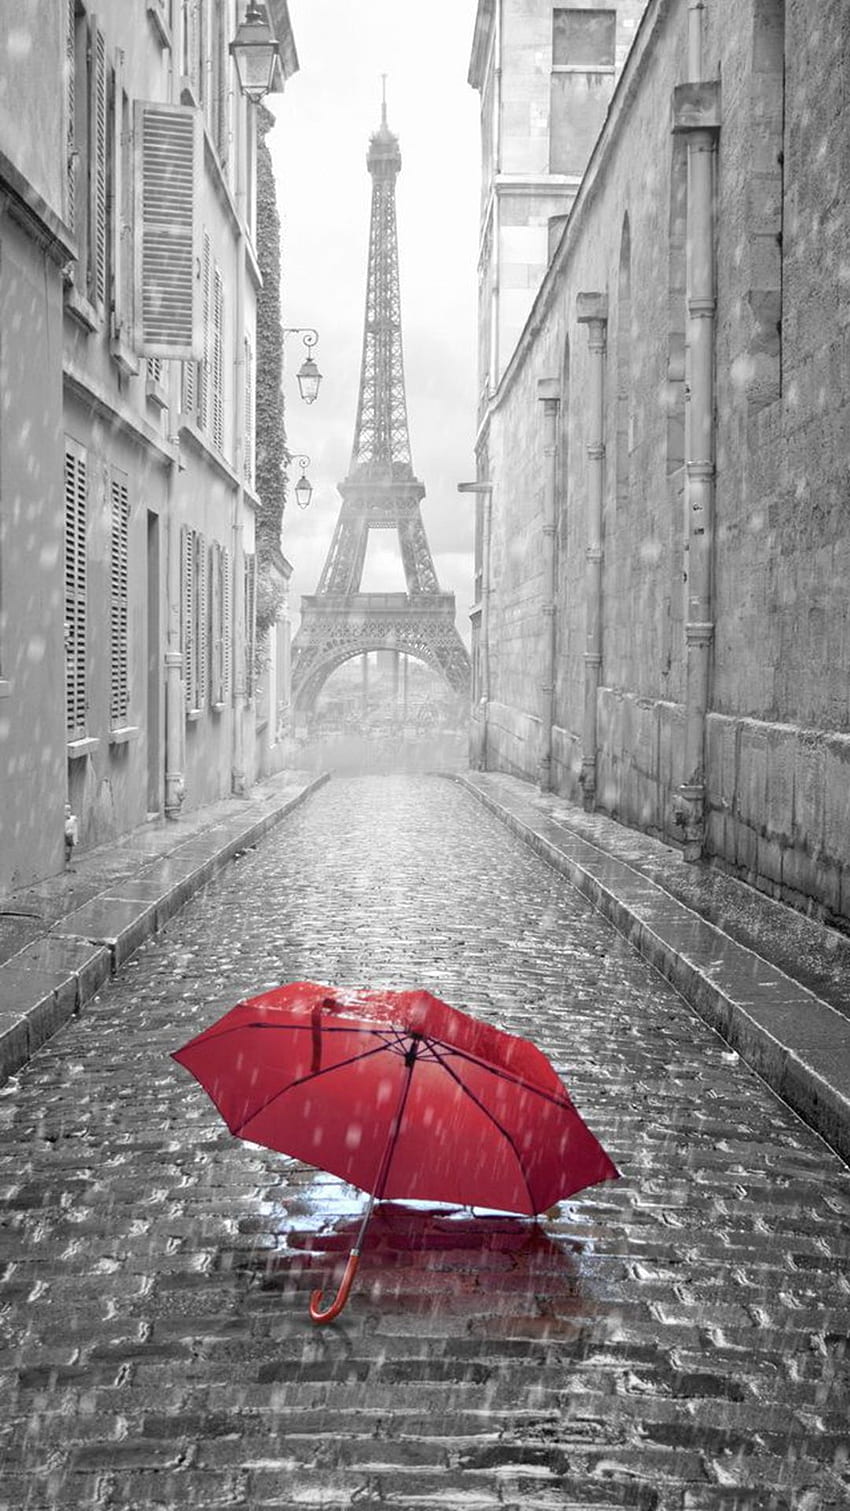 Hình nền dù đỏ sẽ giúp bạn có một không gian nghỉ ngơi và làm việc giống như một chiếc dù đang che chở bạn khỏi nắng gió. Hãy xem hình ảnh liên quan để cùng trải nghiệm những giây phút thư giãn đầy màu sắc.